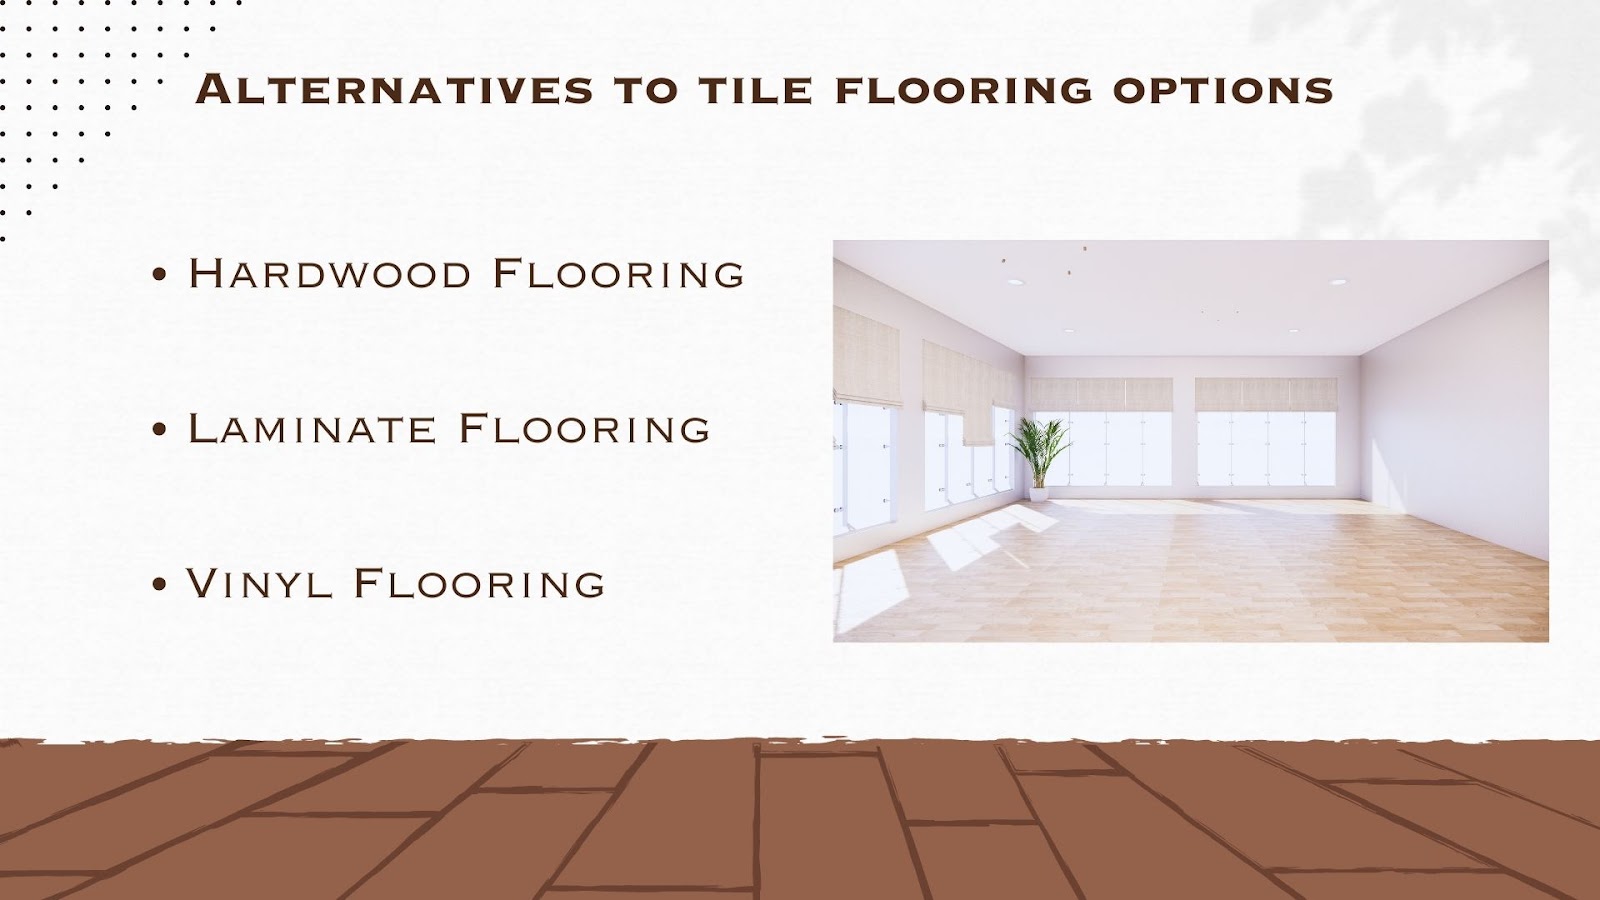 Alternatives to flooring options